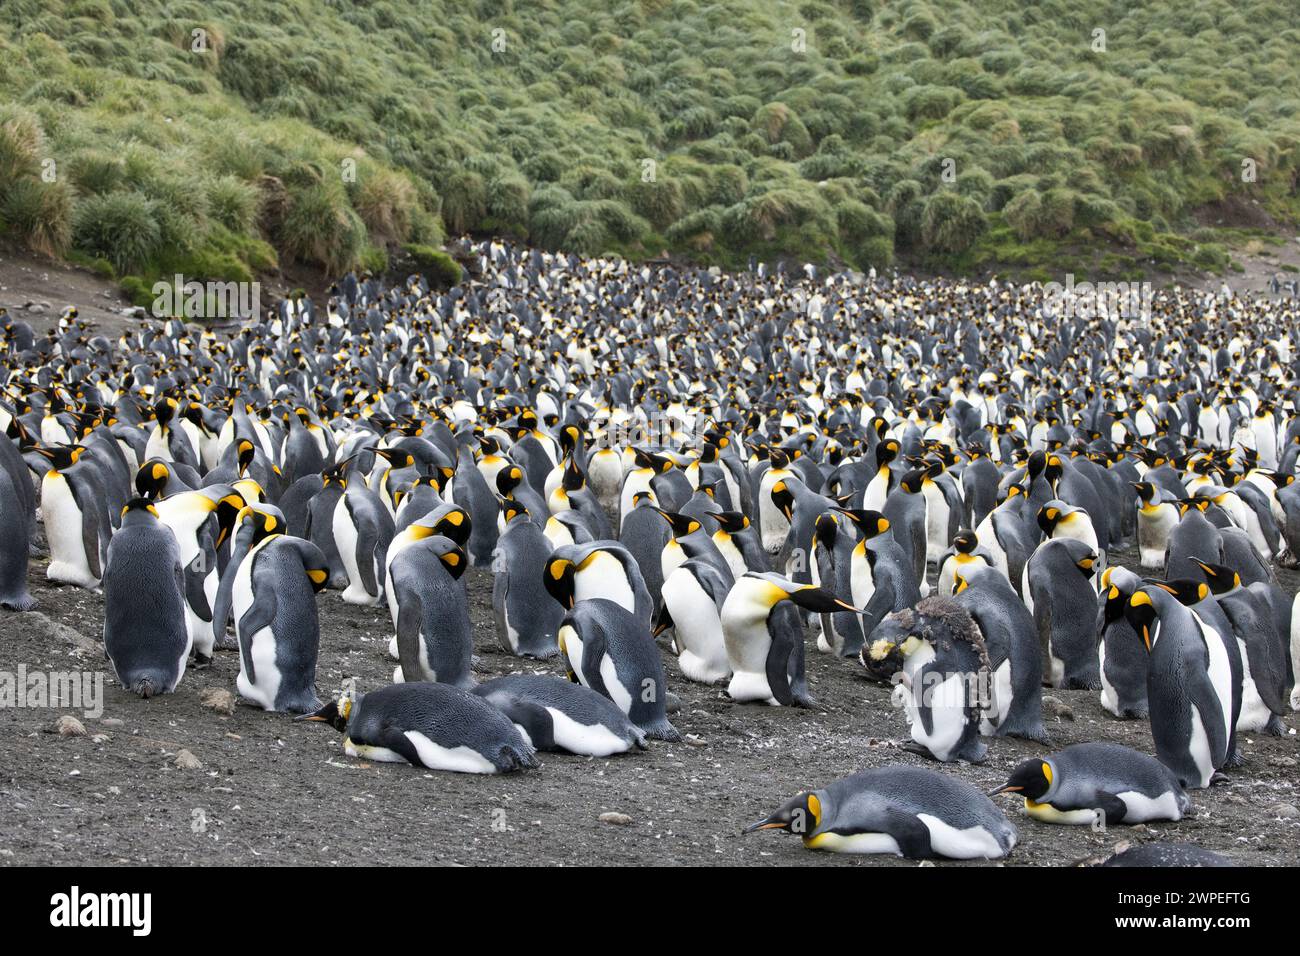 Pinguino re (Aptenodytes patagonicus) sull'isola subantartica Macquarie in Australia Foto Stock